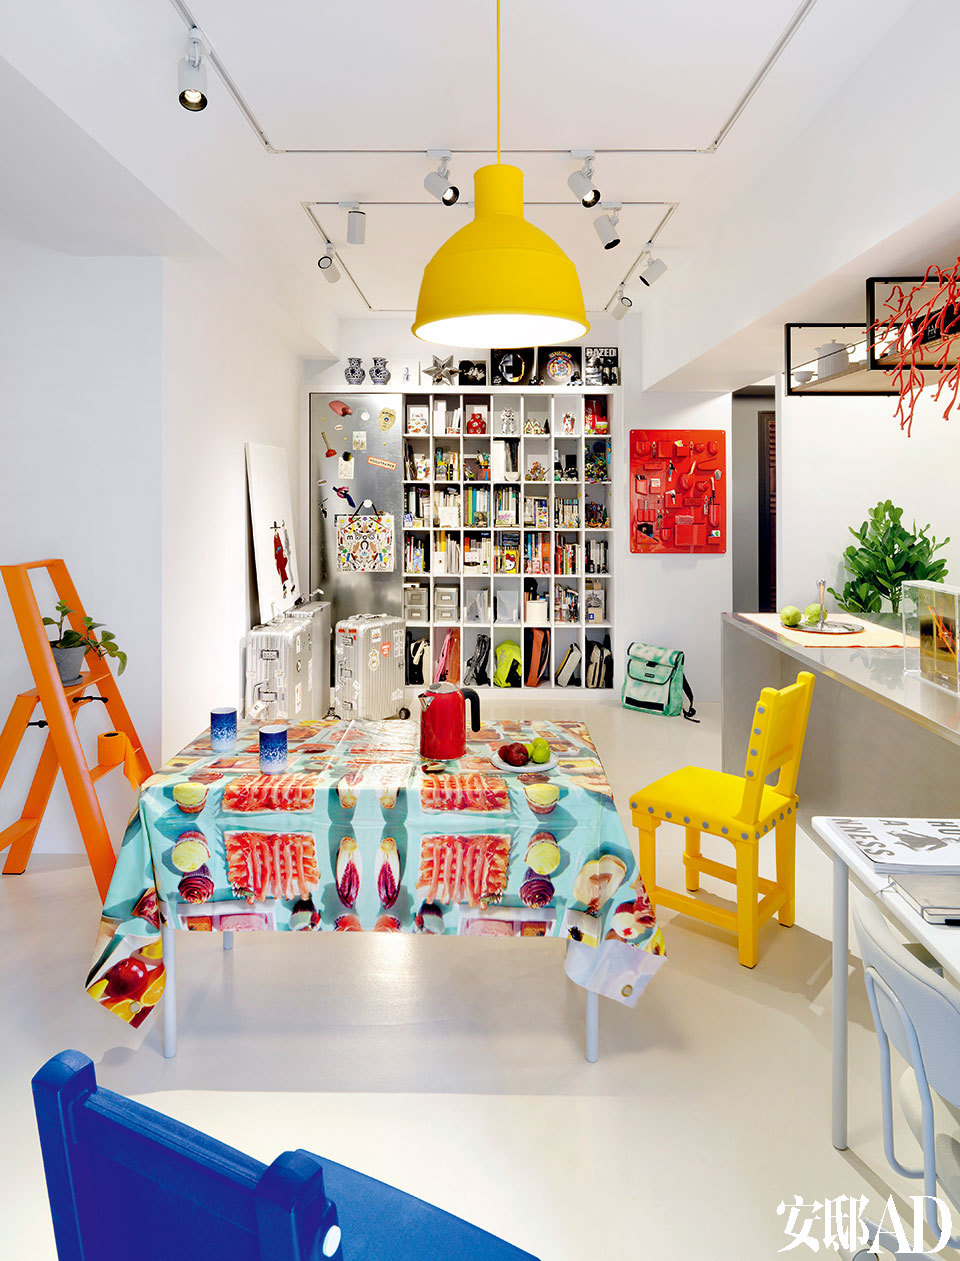 橘色梯子来自Metaphys，是日本设计师村田智明2010年的设计作品。餐桌布是Seletti与摄影杂志ToiletPaper 合作推出的设计，桌上蓝白色渐变的杯子来自Pili自己的设计作品“漆瓷”系列，叫作《消失的青花》。